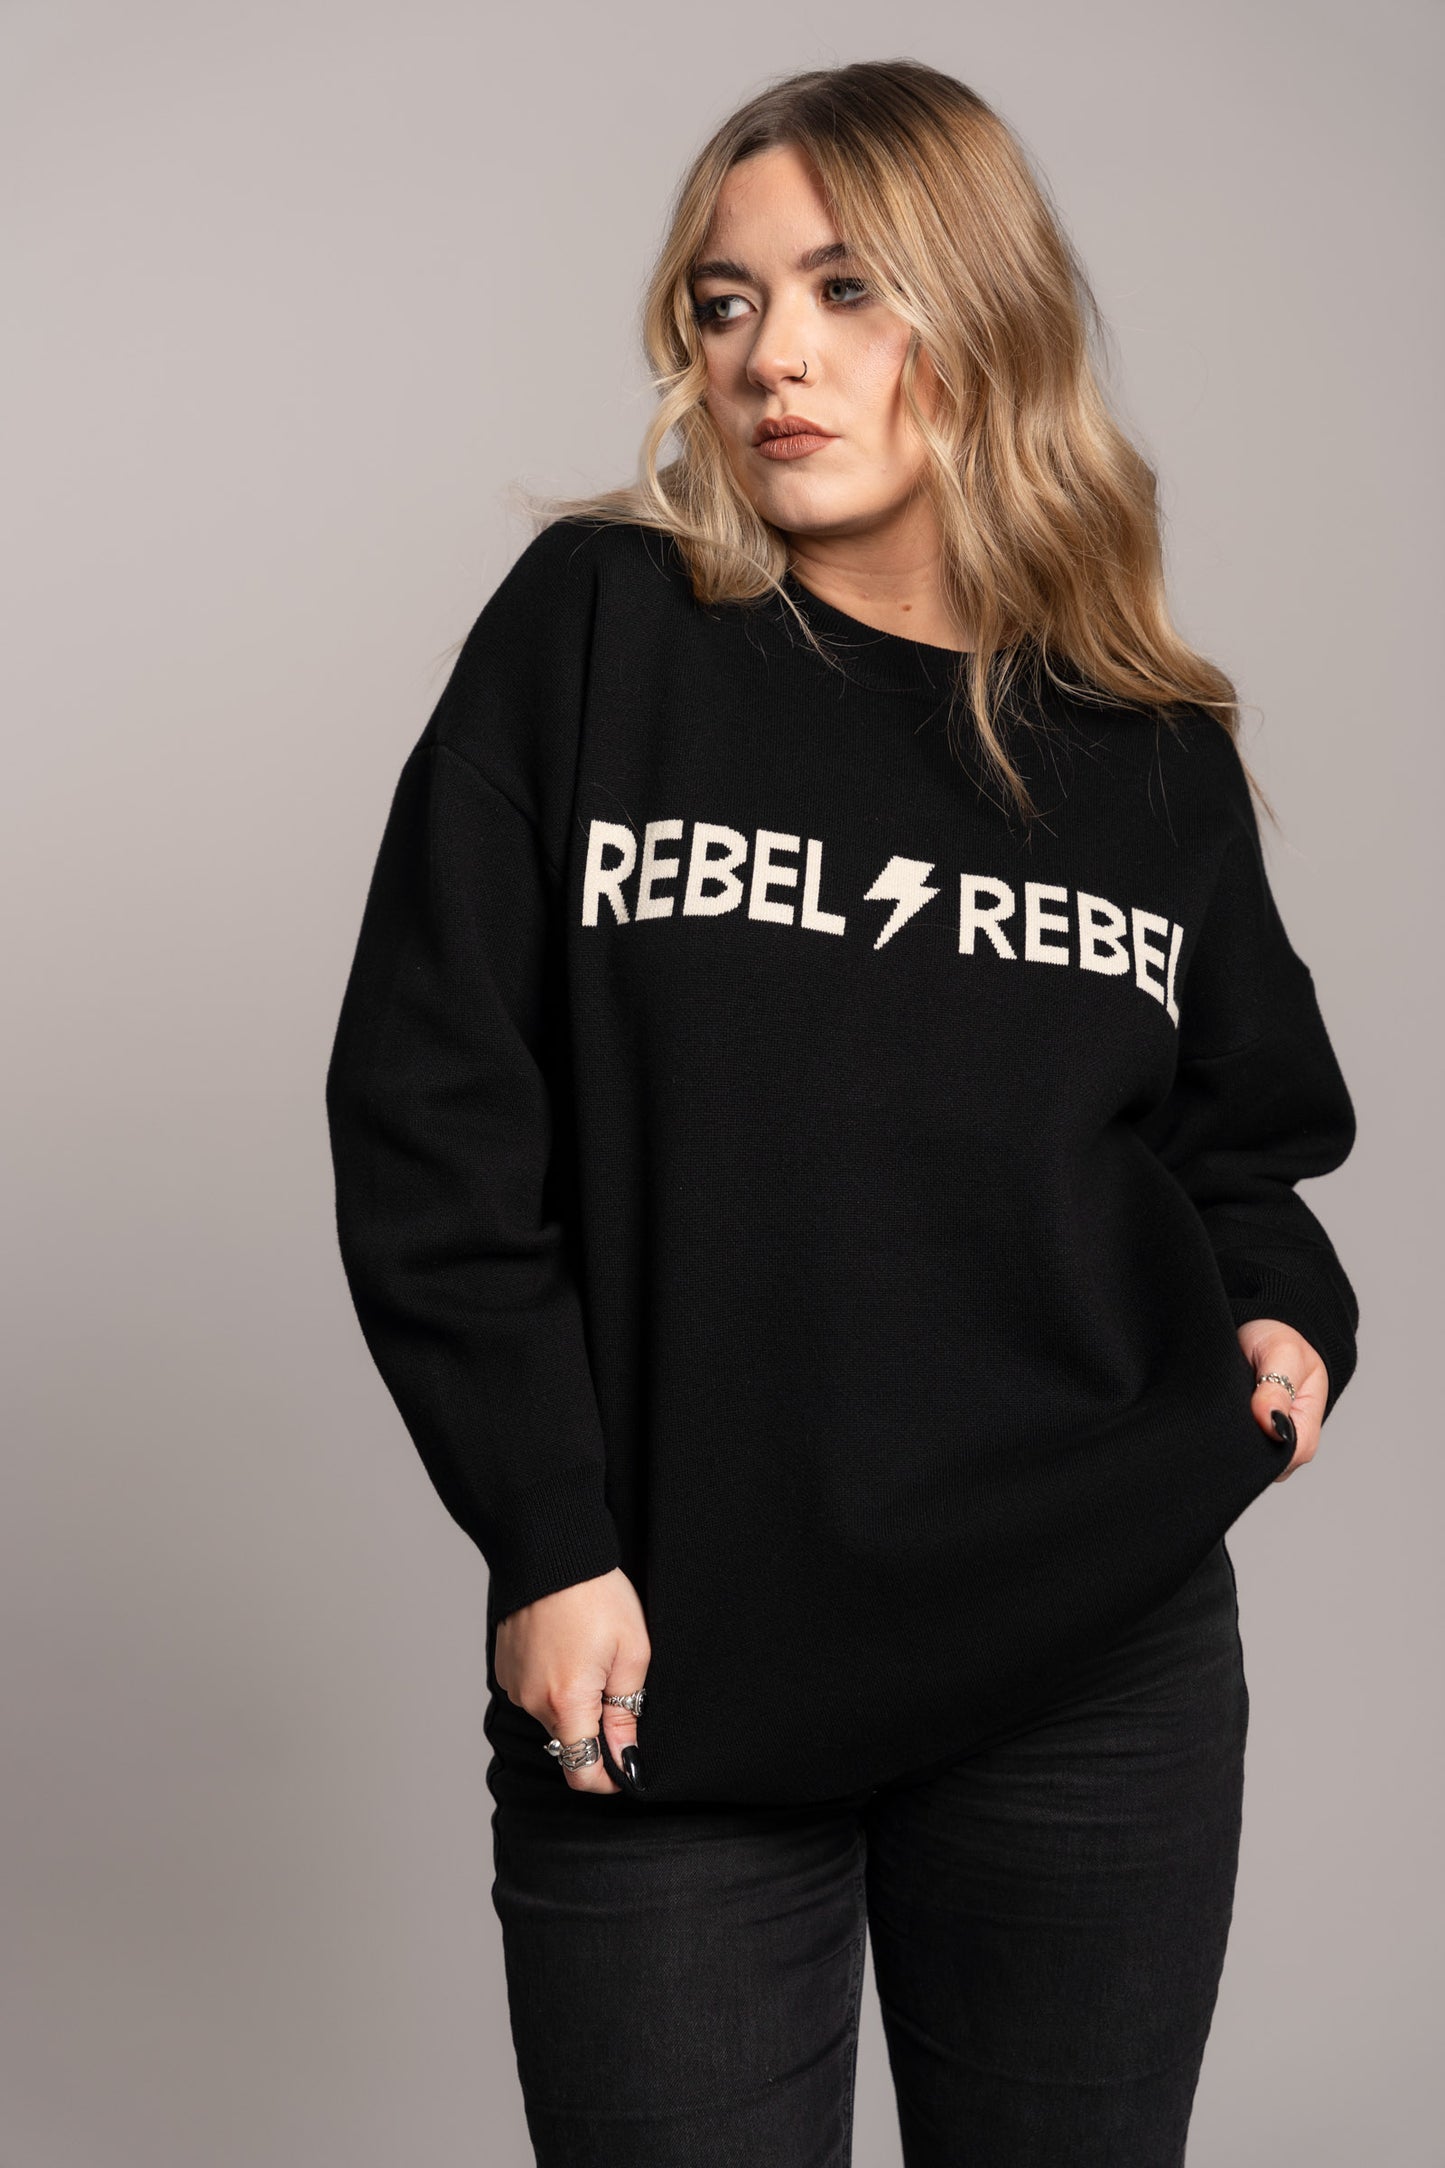 Rebel Rebel Knit Jumper